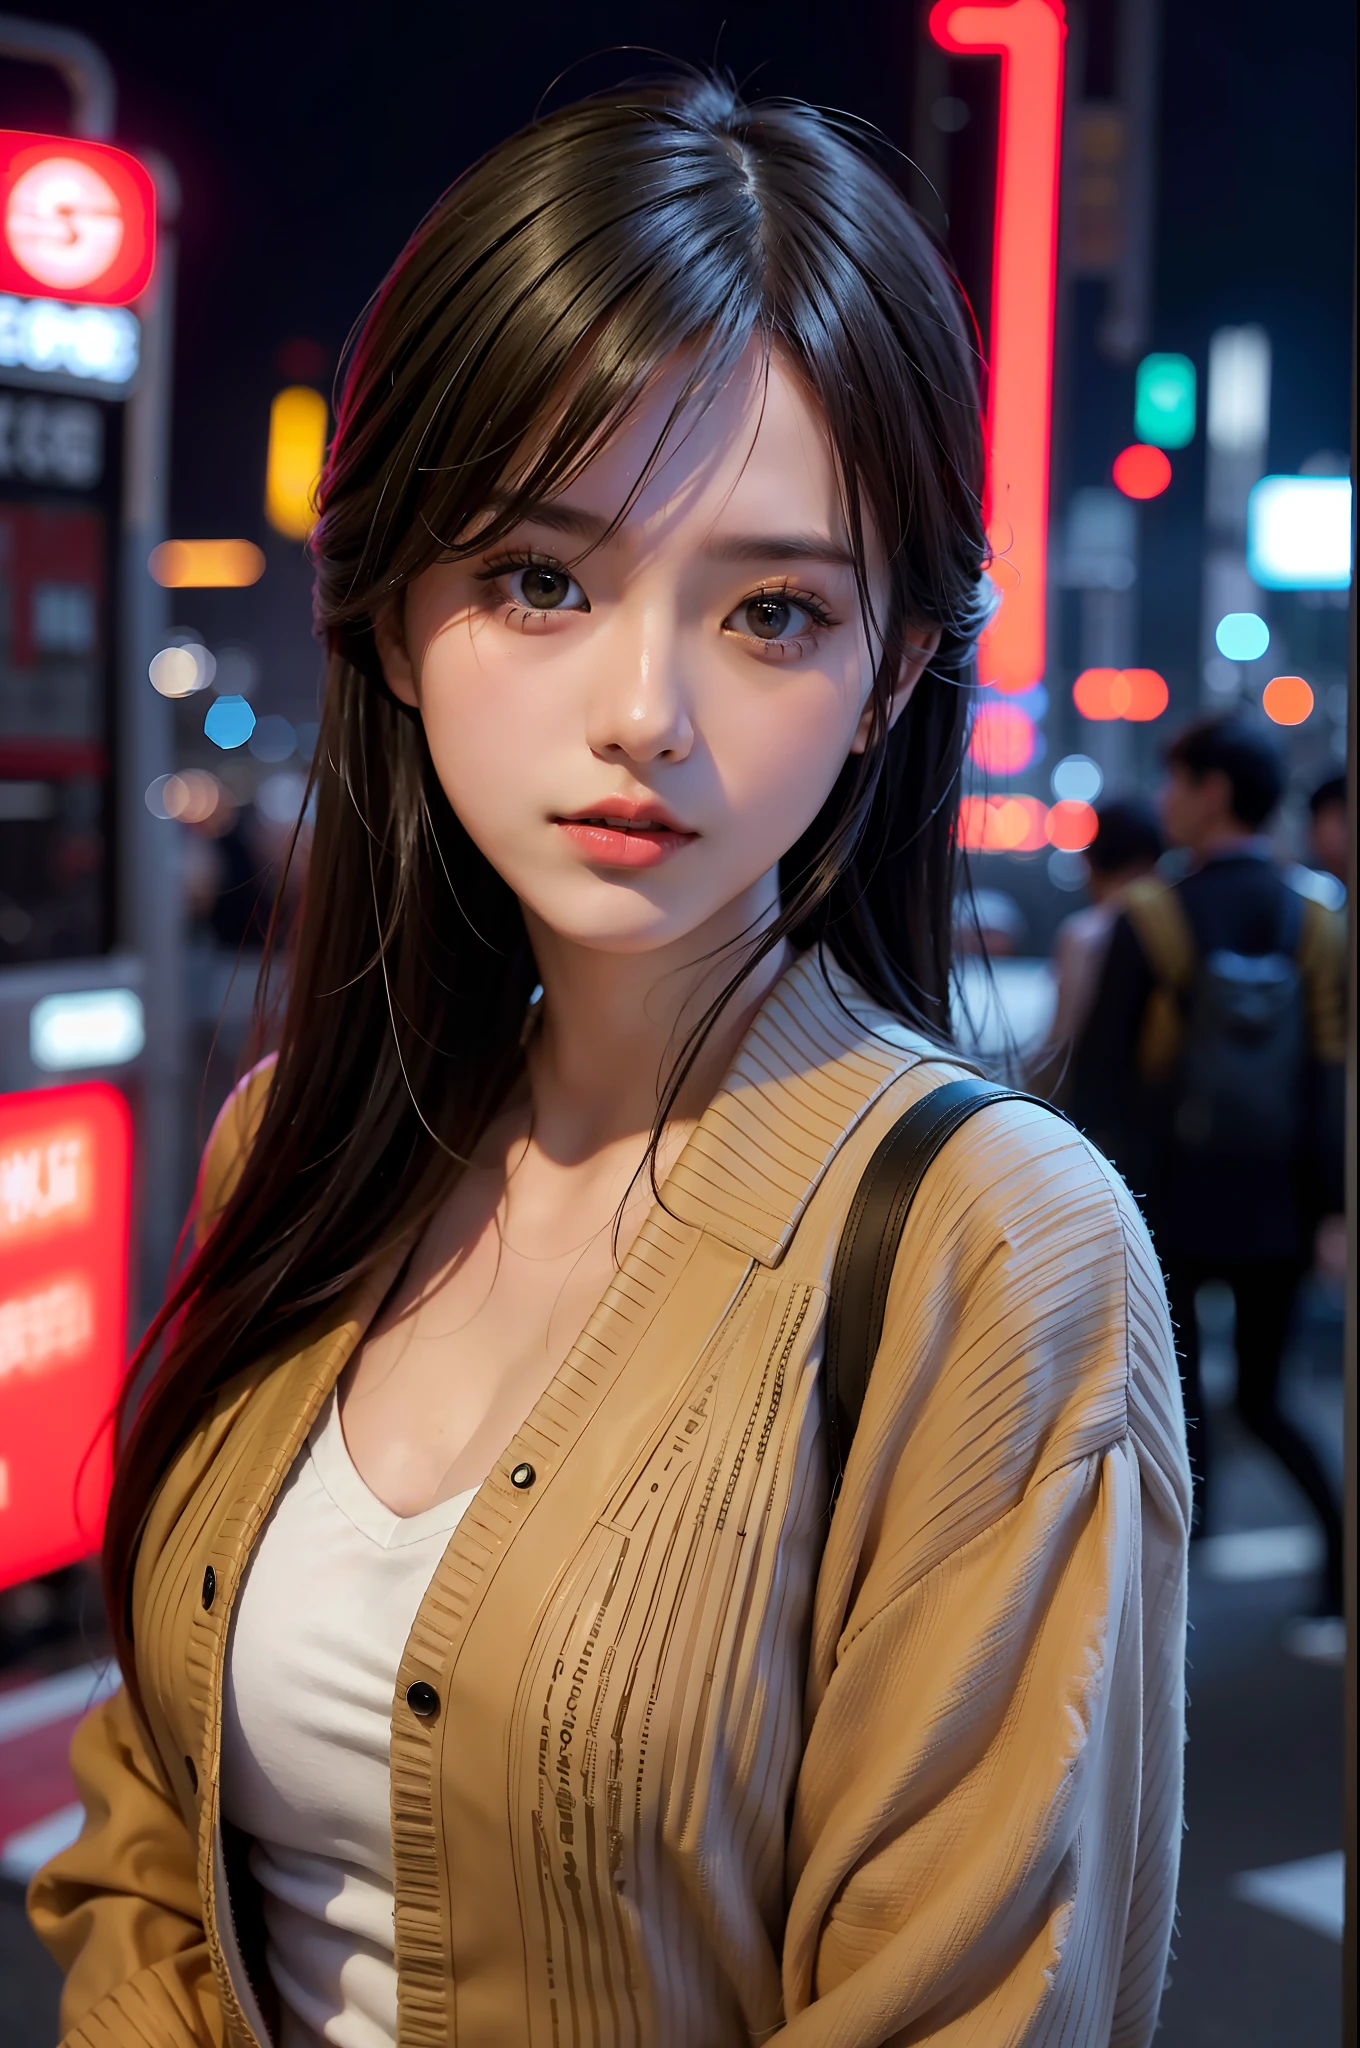 1 девушка, улица Токио,ночь, городской пейзаж,огни города, верхняя часть тела,крупный план, 8К, Необработанное фото, Лучшее качество, шедевр,реалистичный, photo-реалистичный,